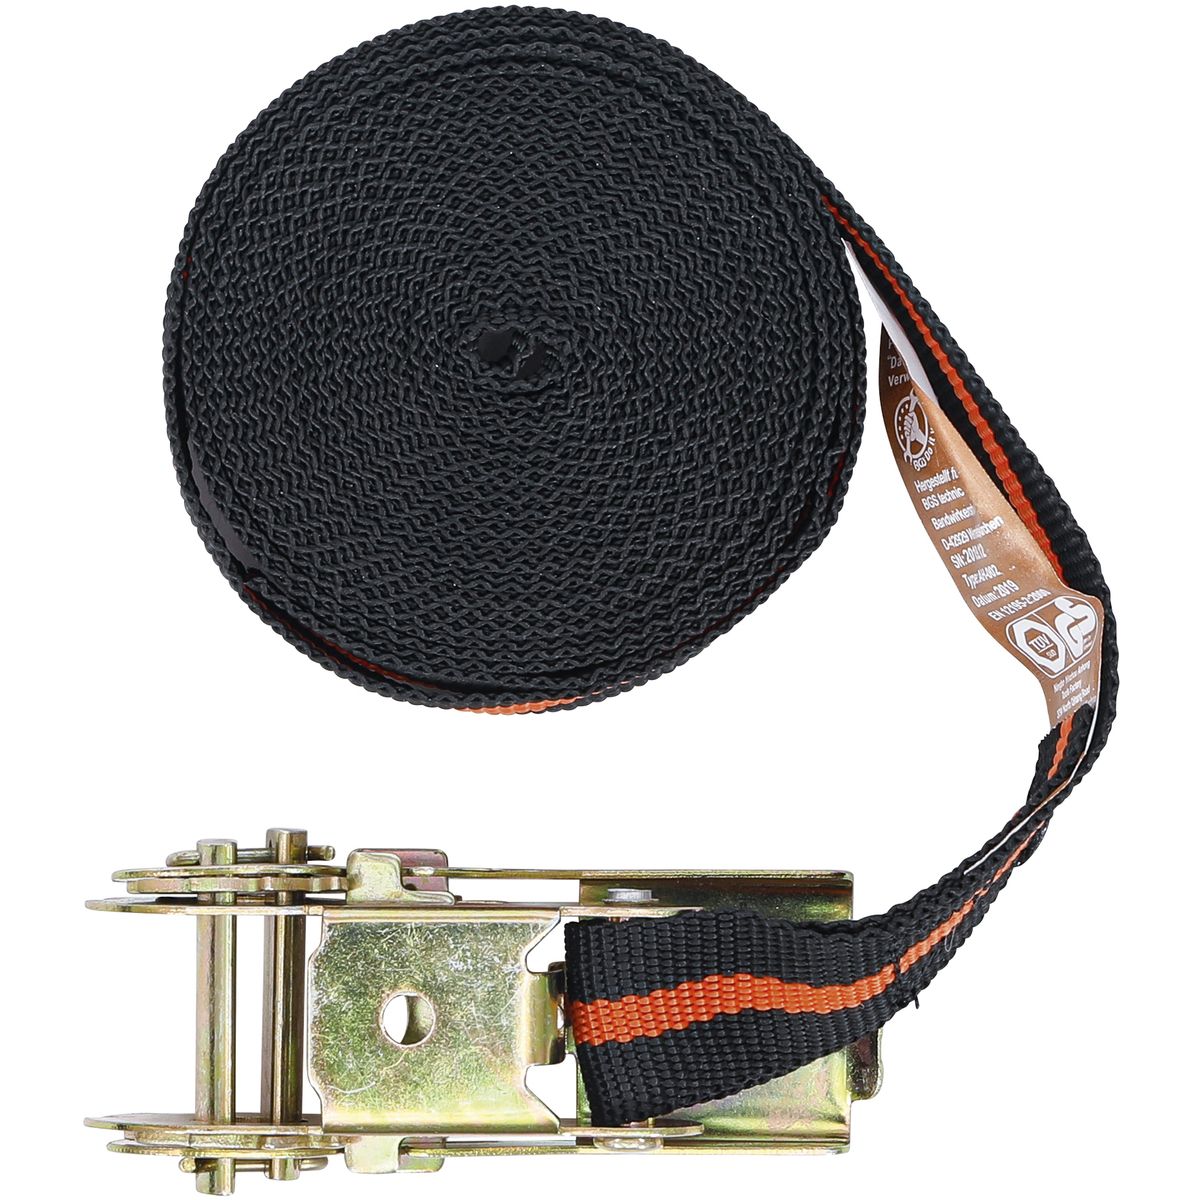 Knarren-Spannband | 5 m x 25 mm